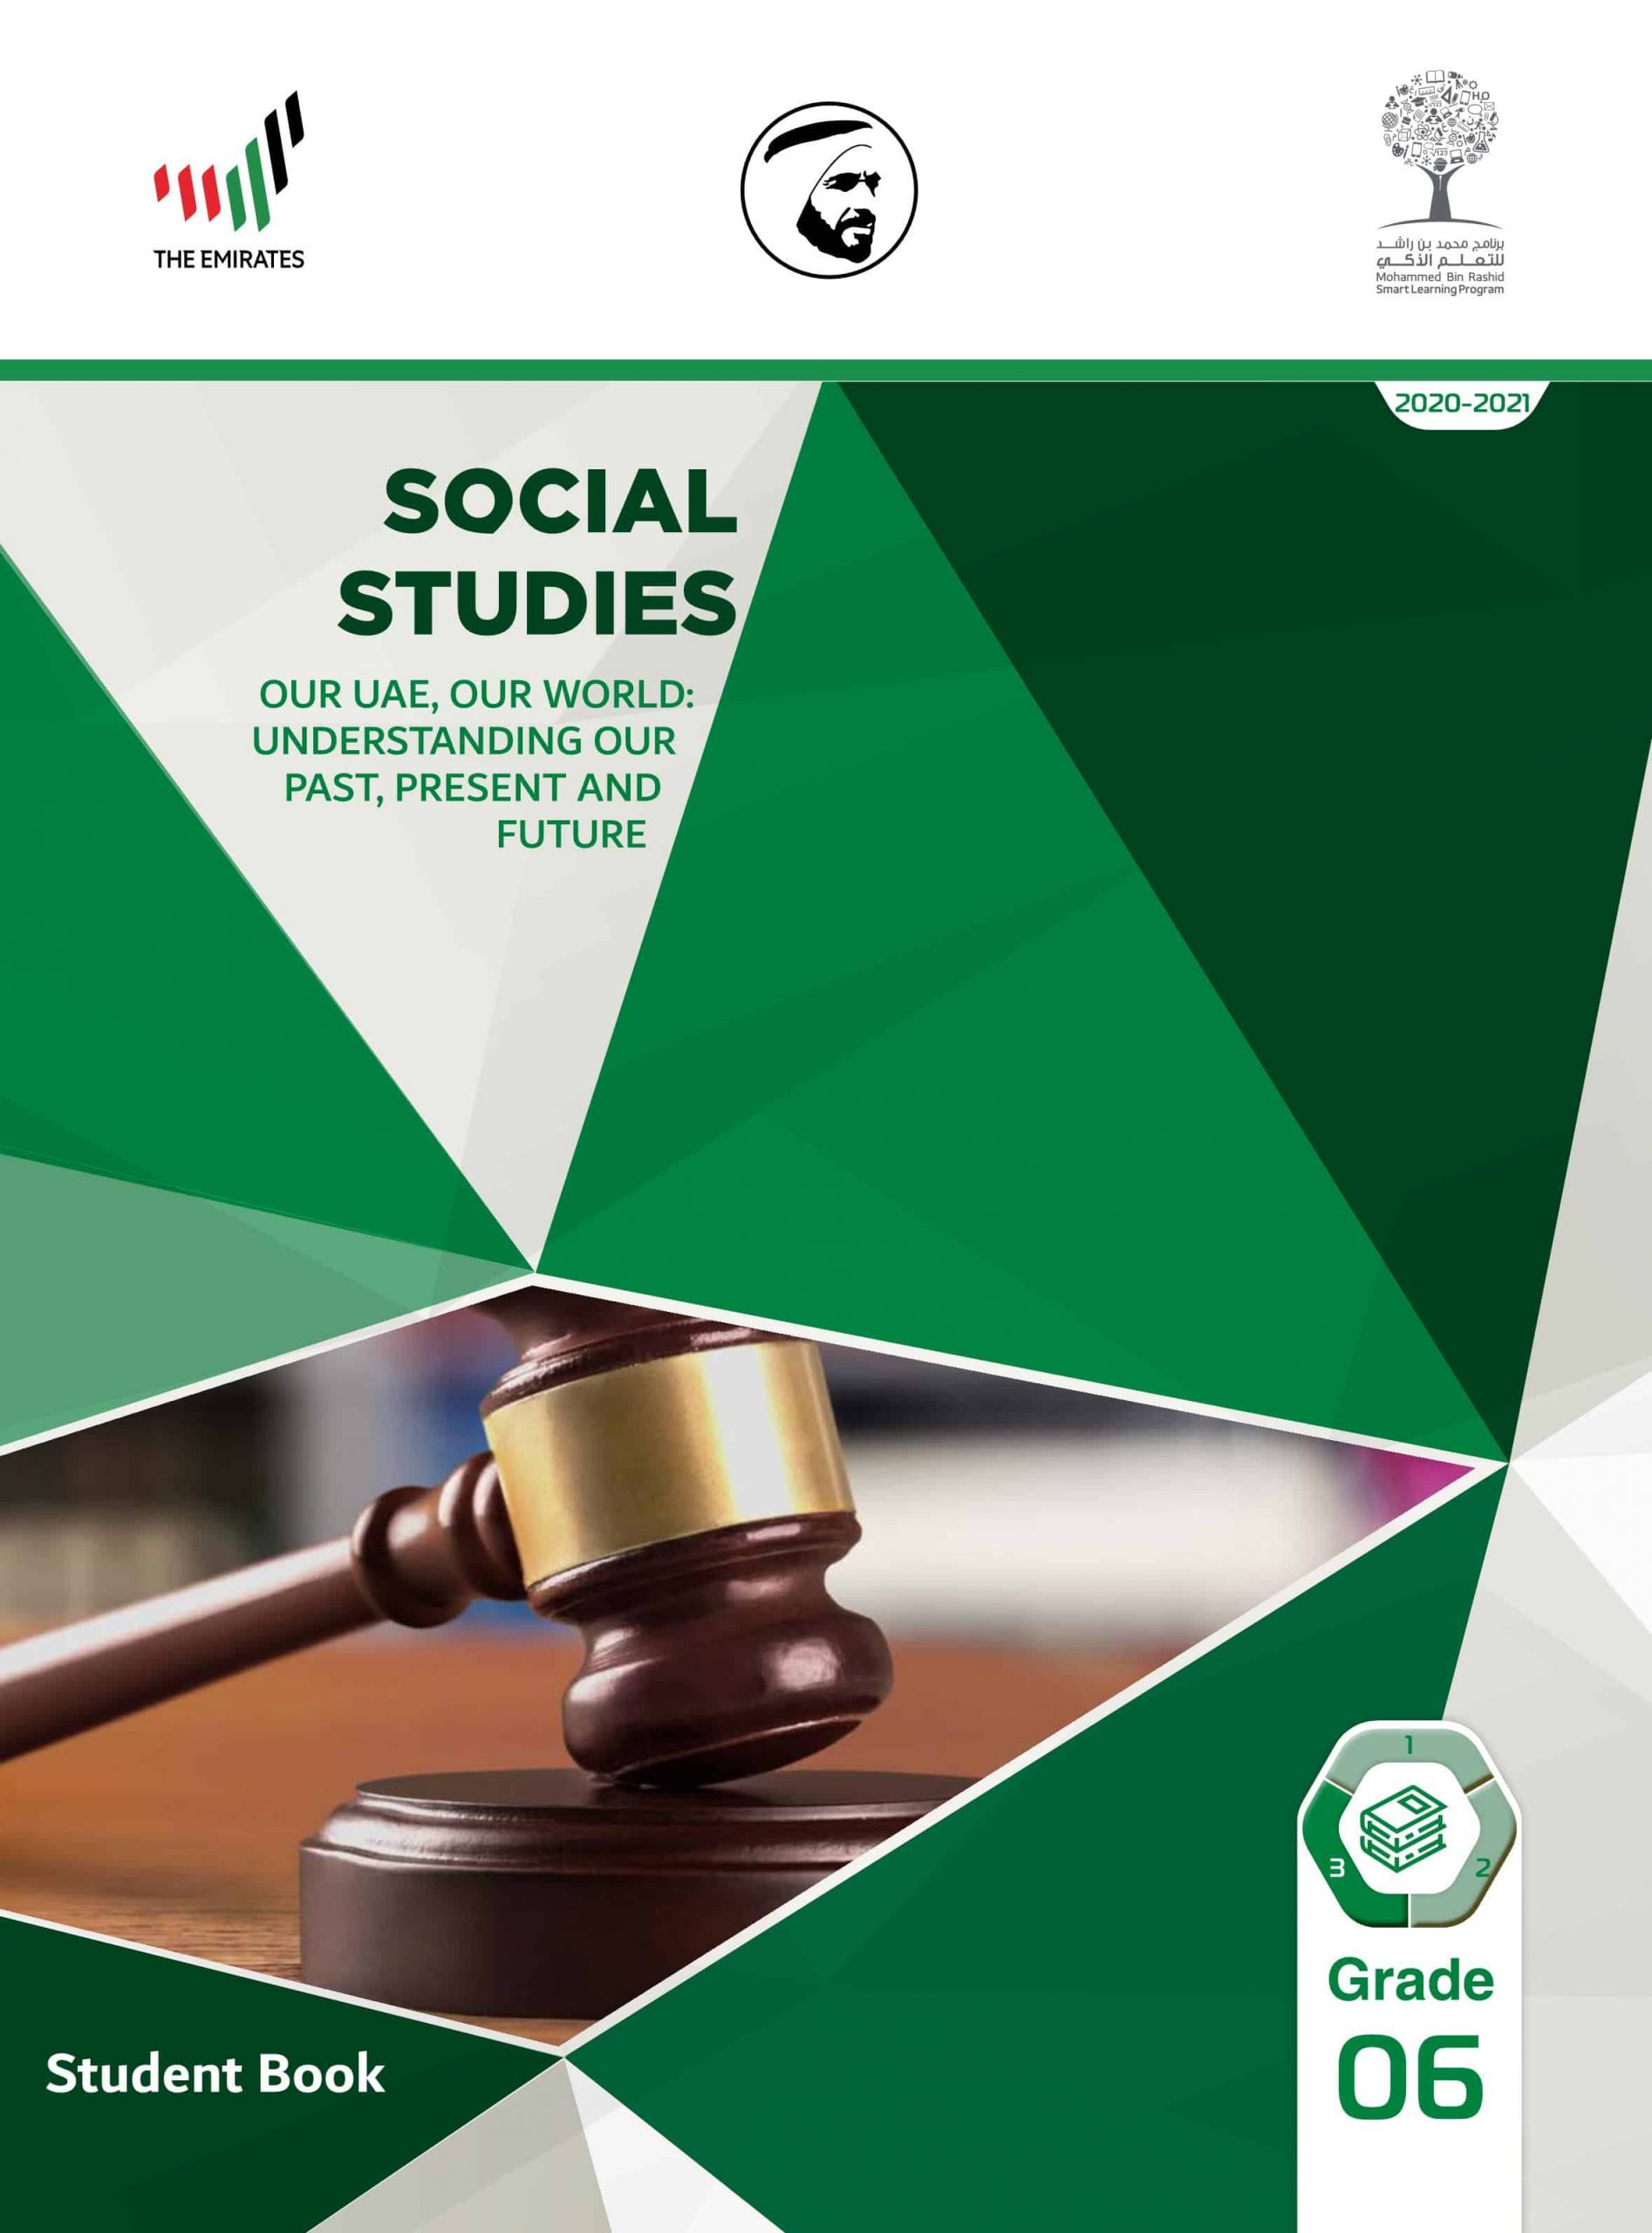 كتاب الطالب بالإنجليزي الفصل الدراسي الثالث 2020-2021 الصف السادس مادة الدراسات الإجتماعية والتربية الوطنية